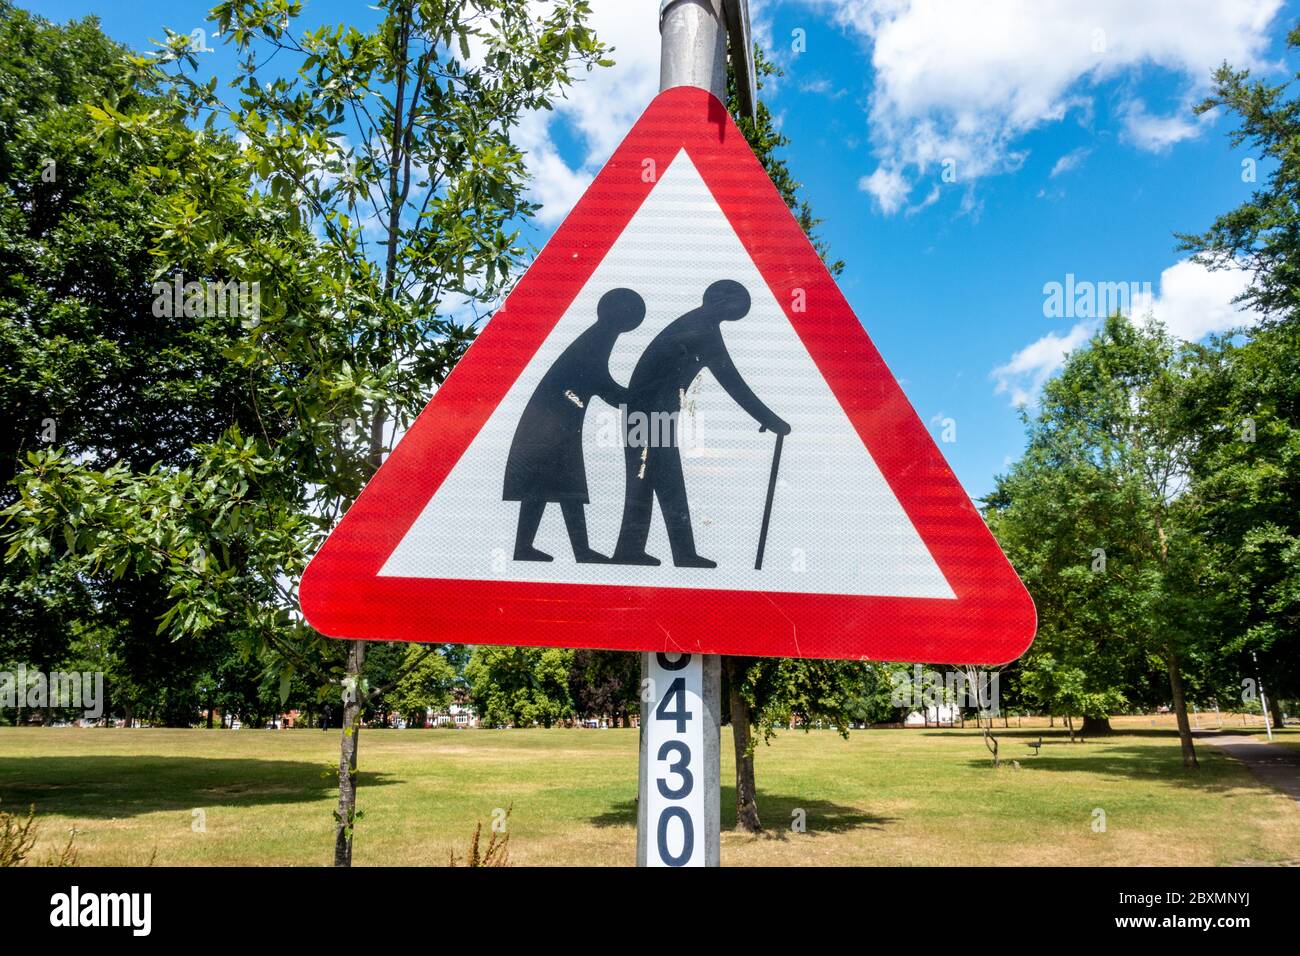 Un signo triangular rojo en un parque advierte a las personas de peatones que pueden ser lentos o inestables debido a la vejez o a la falta de firmeza. Foto de stock